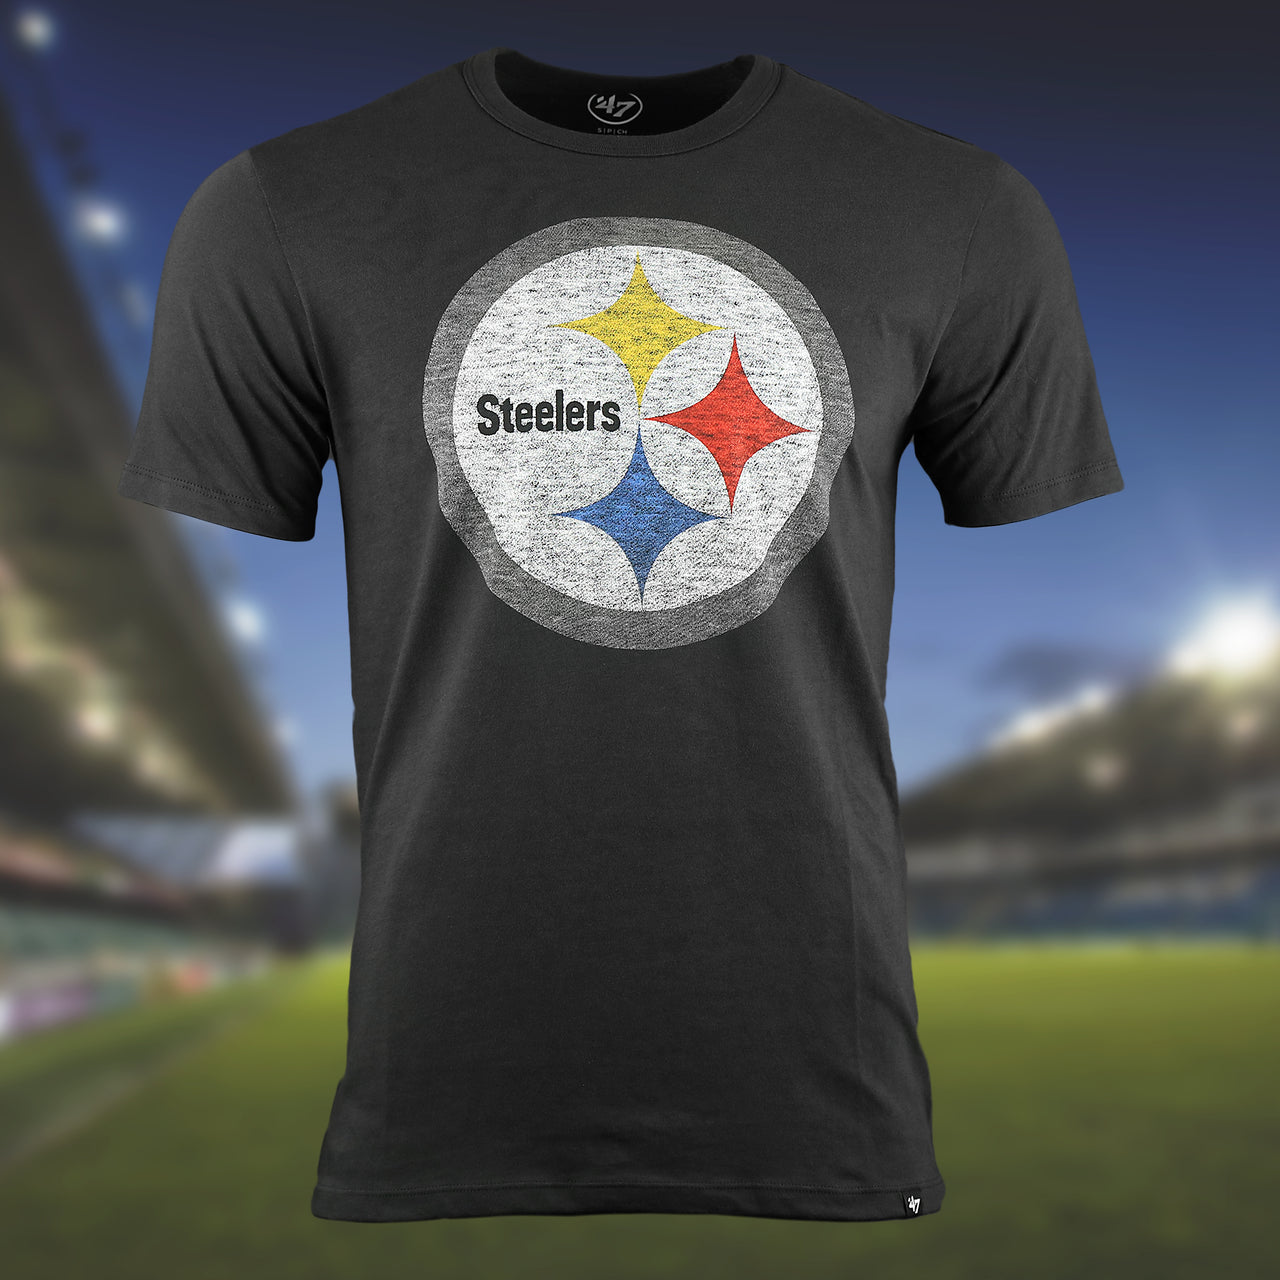 The Pittsburgh Steelers Premier Franklin Worn Printed Steelers Logo Tshirt | Flint Black Tshirt